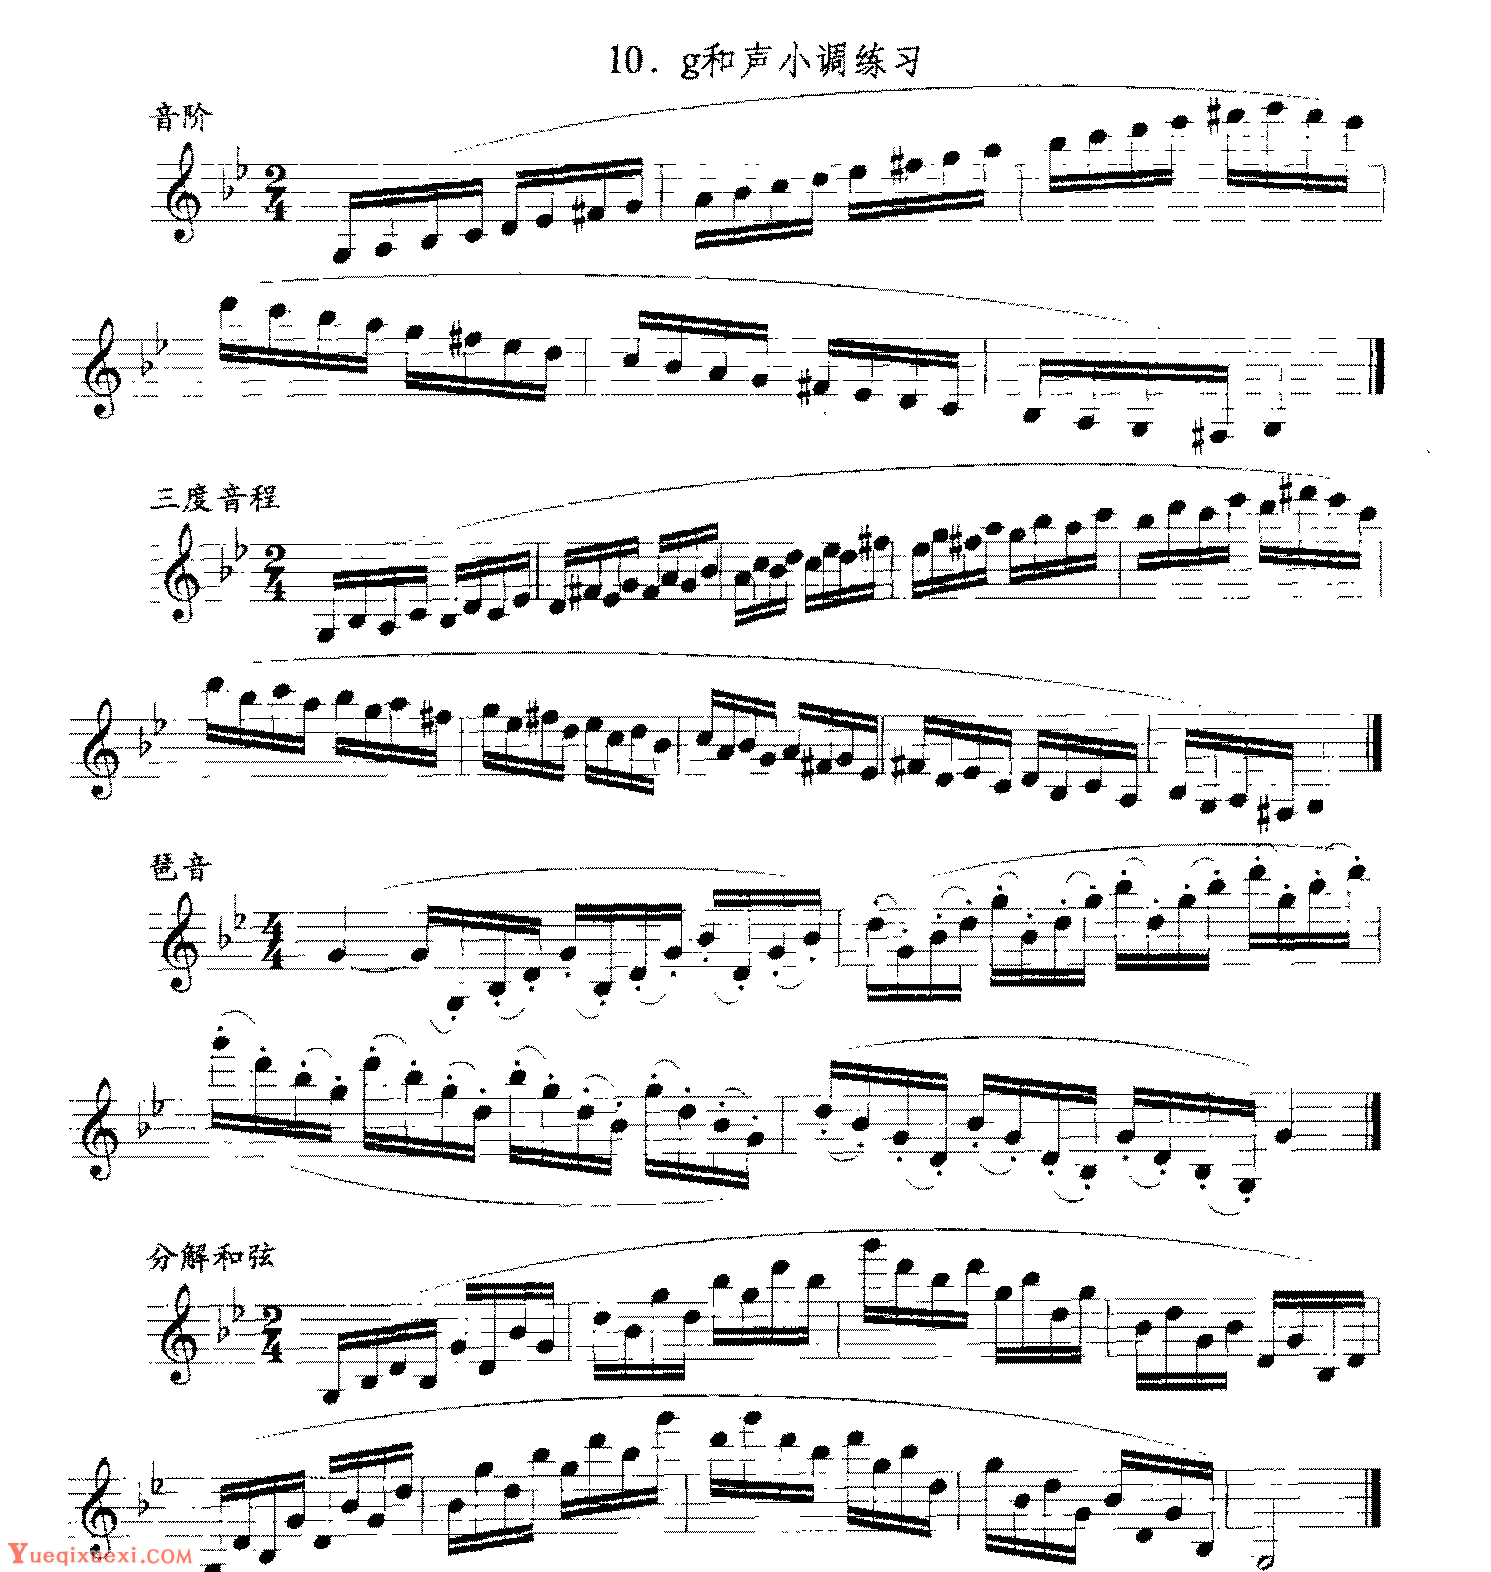 单簧管日常基础技术练习曲《g和声小调练习》